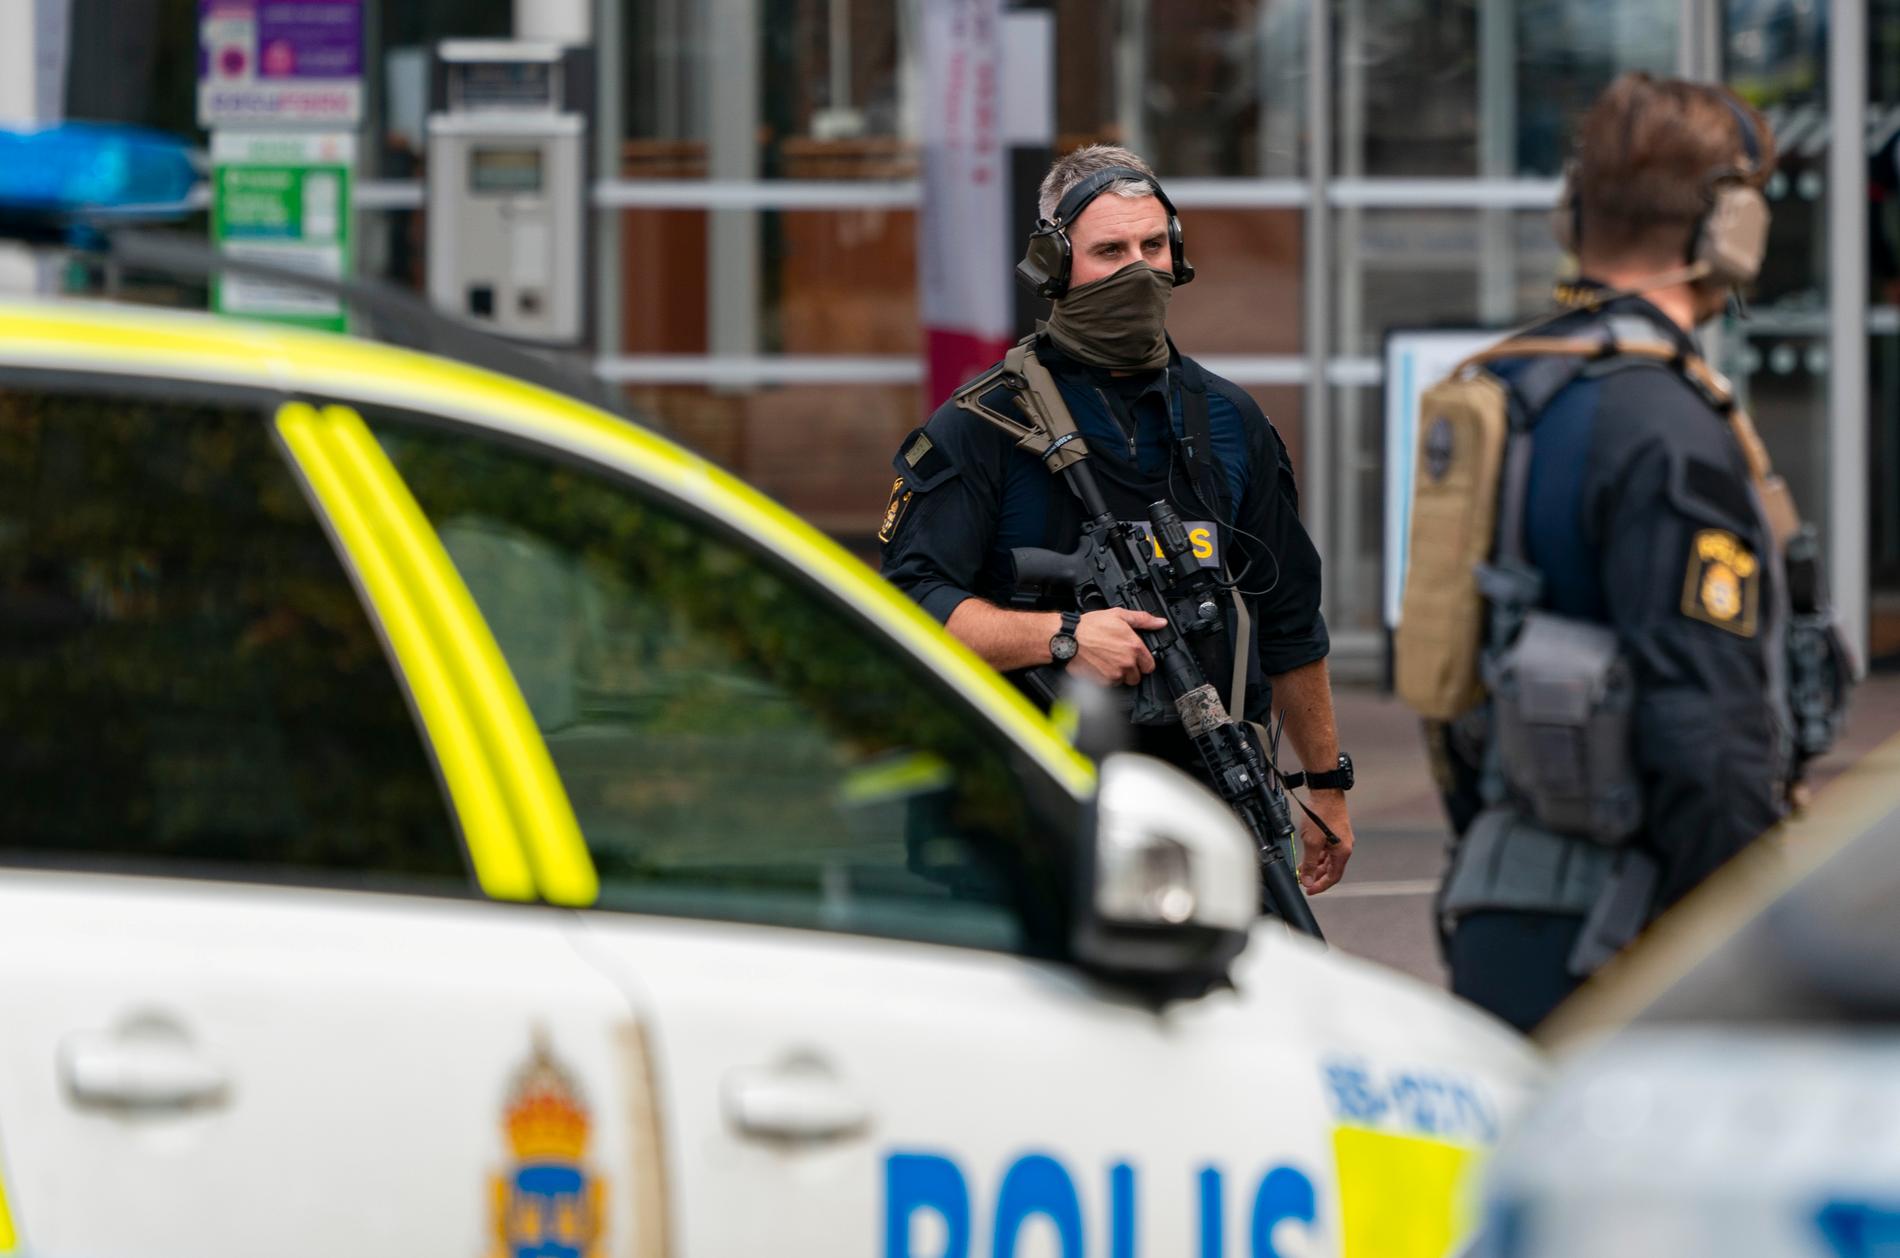 Polis på plats vid Skånes universitetssjukhus under det våldsamma bråket i september. Arkivbild